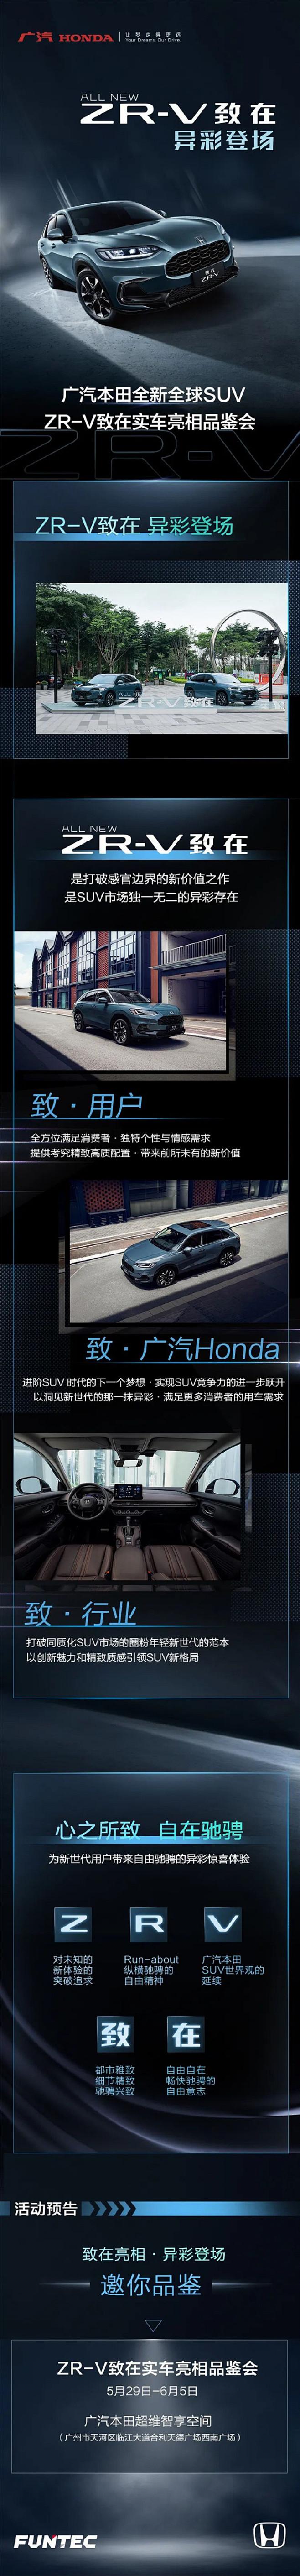 #广汽Honda全新全球SUV#
邀你品...